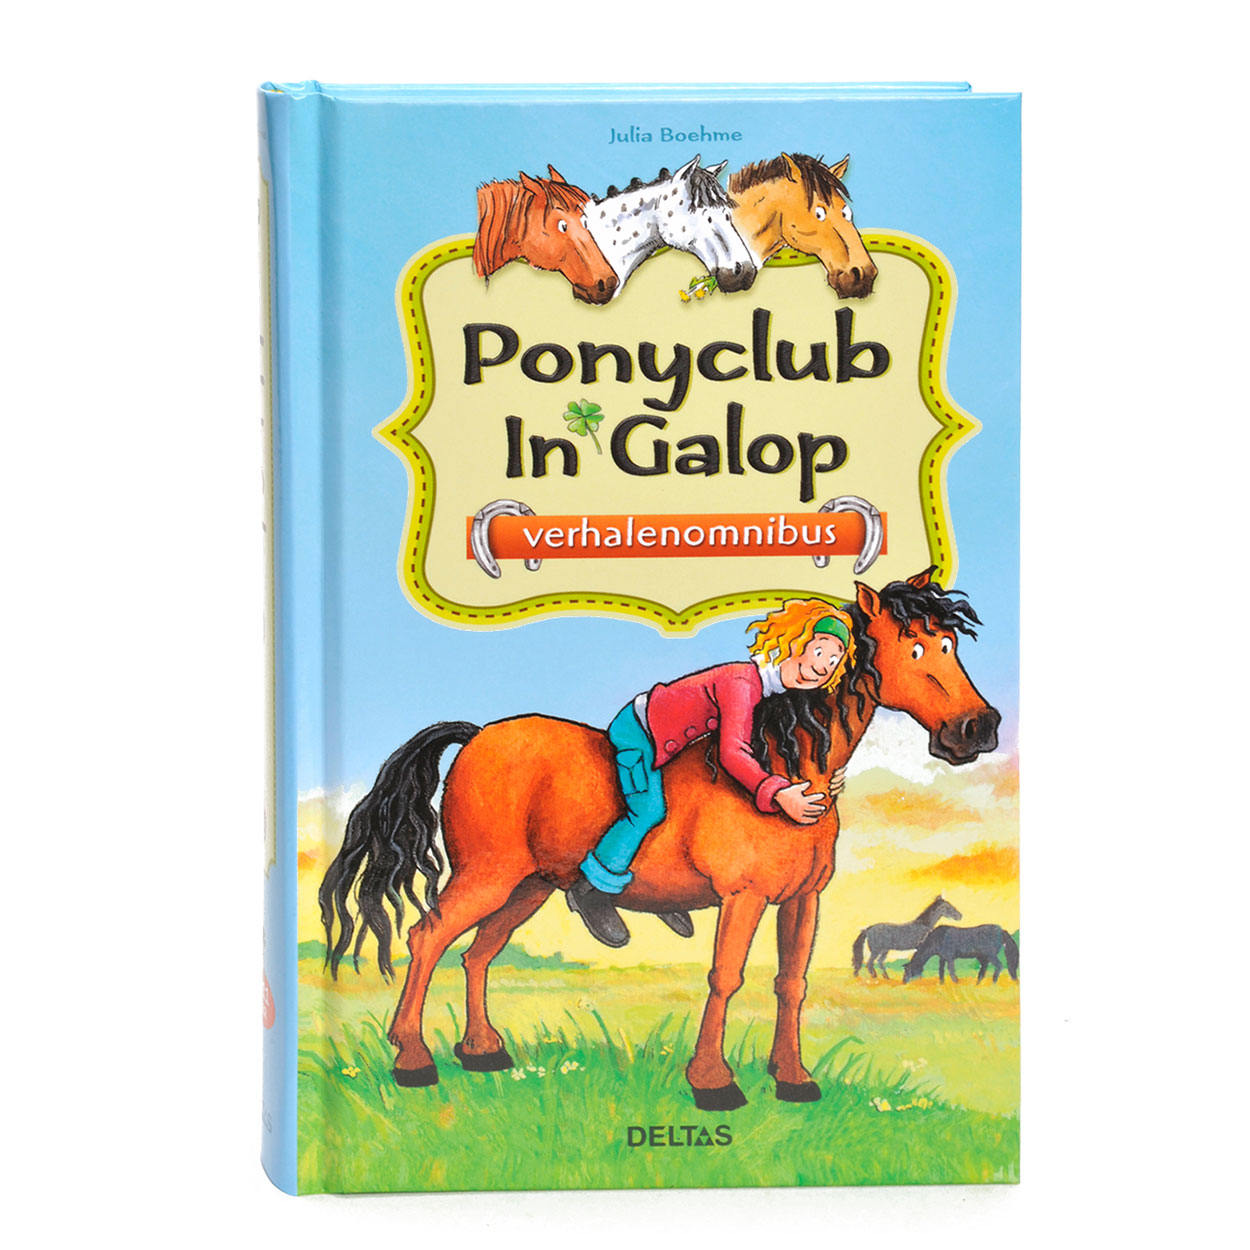 Ponyclub in galop verhalenomnibus